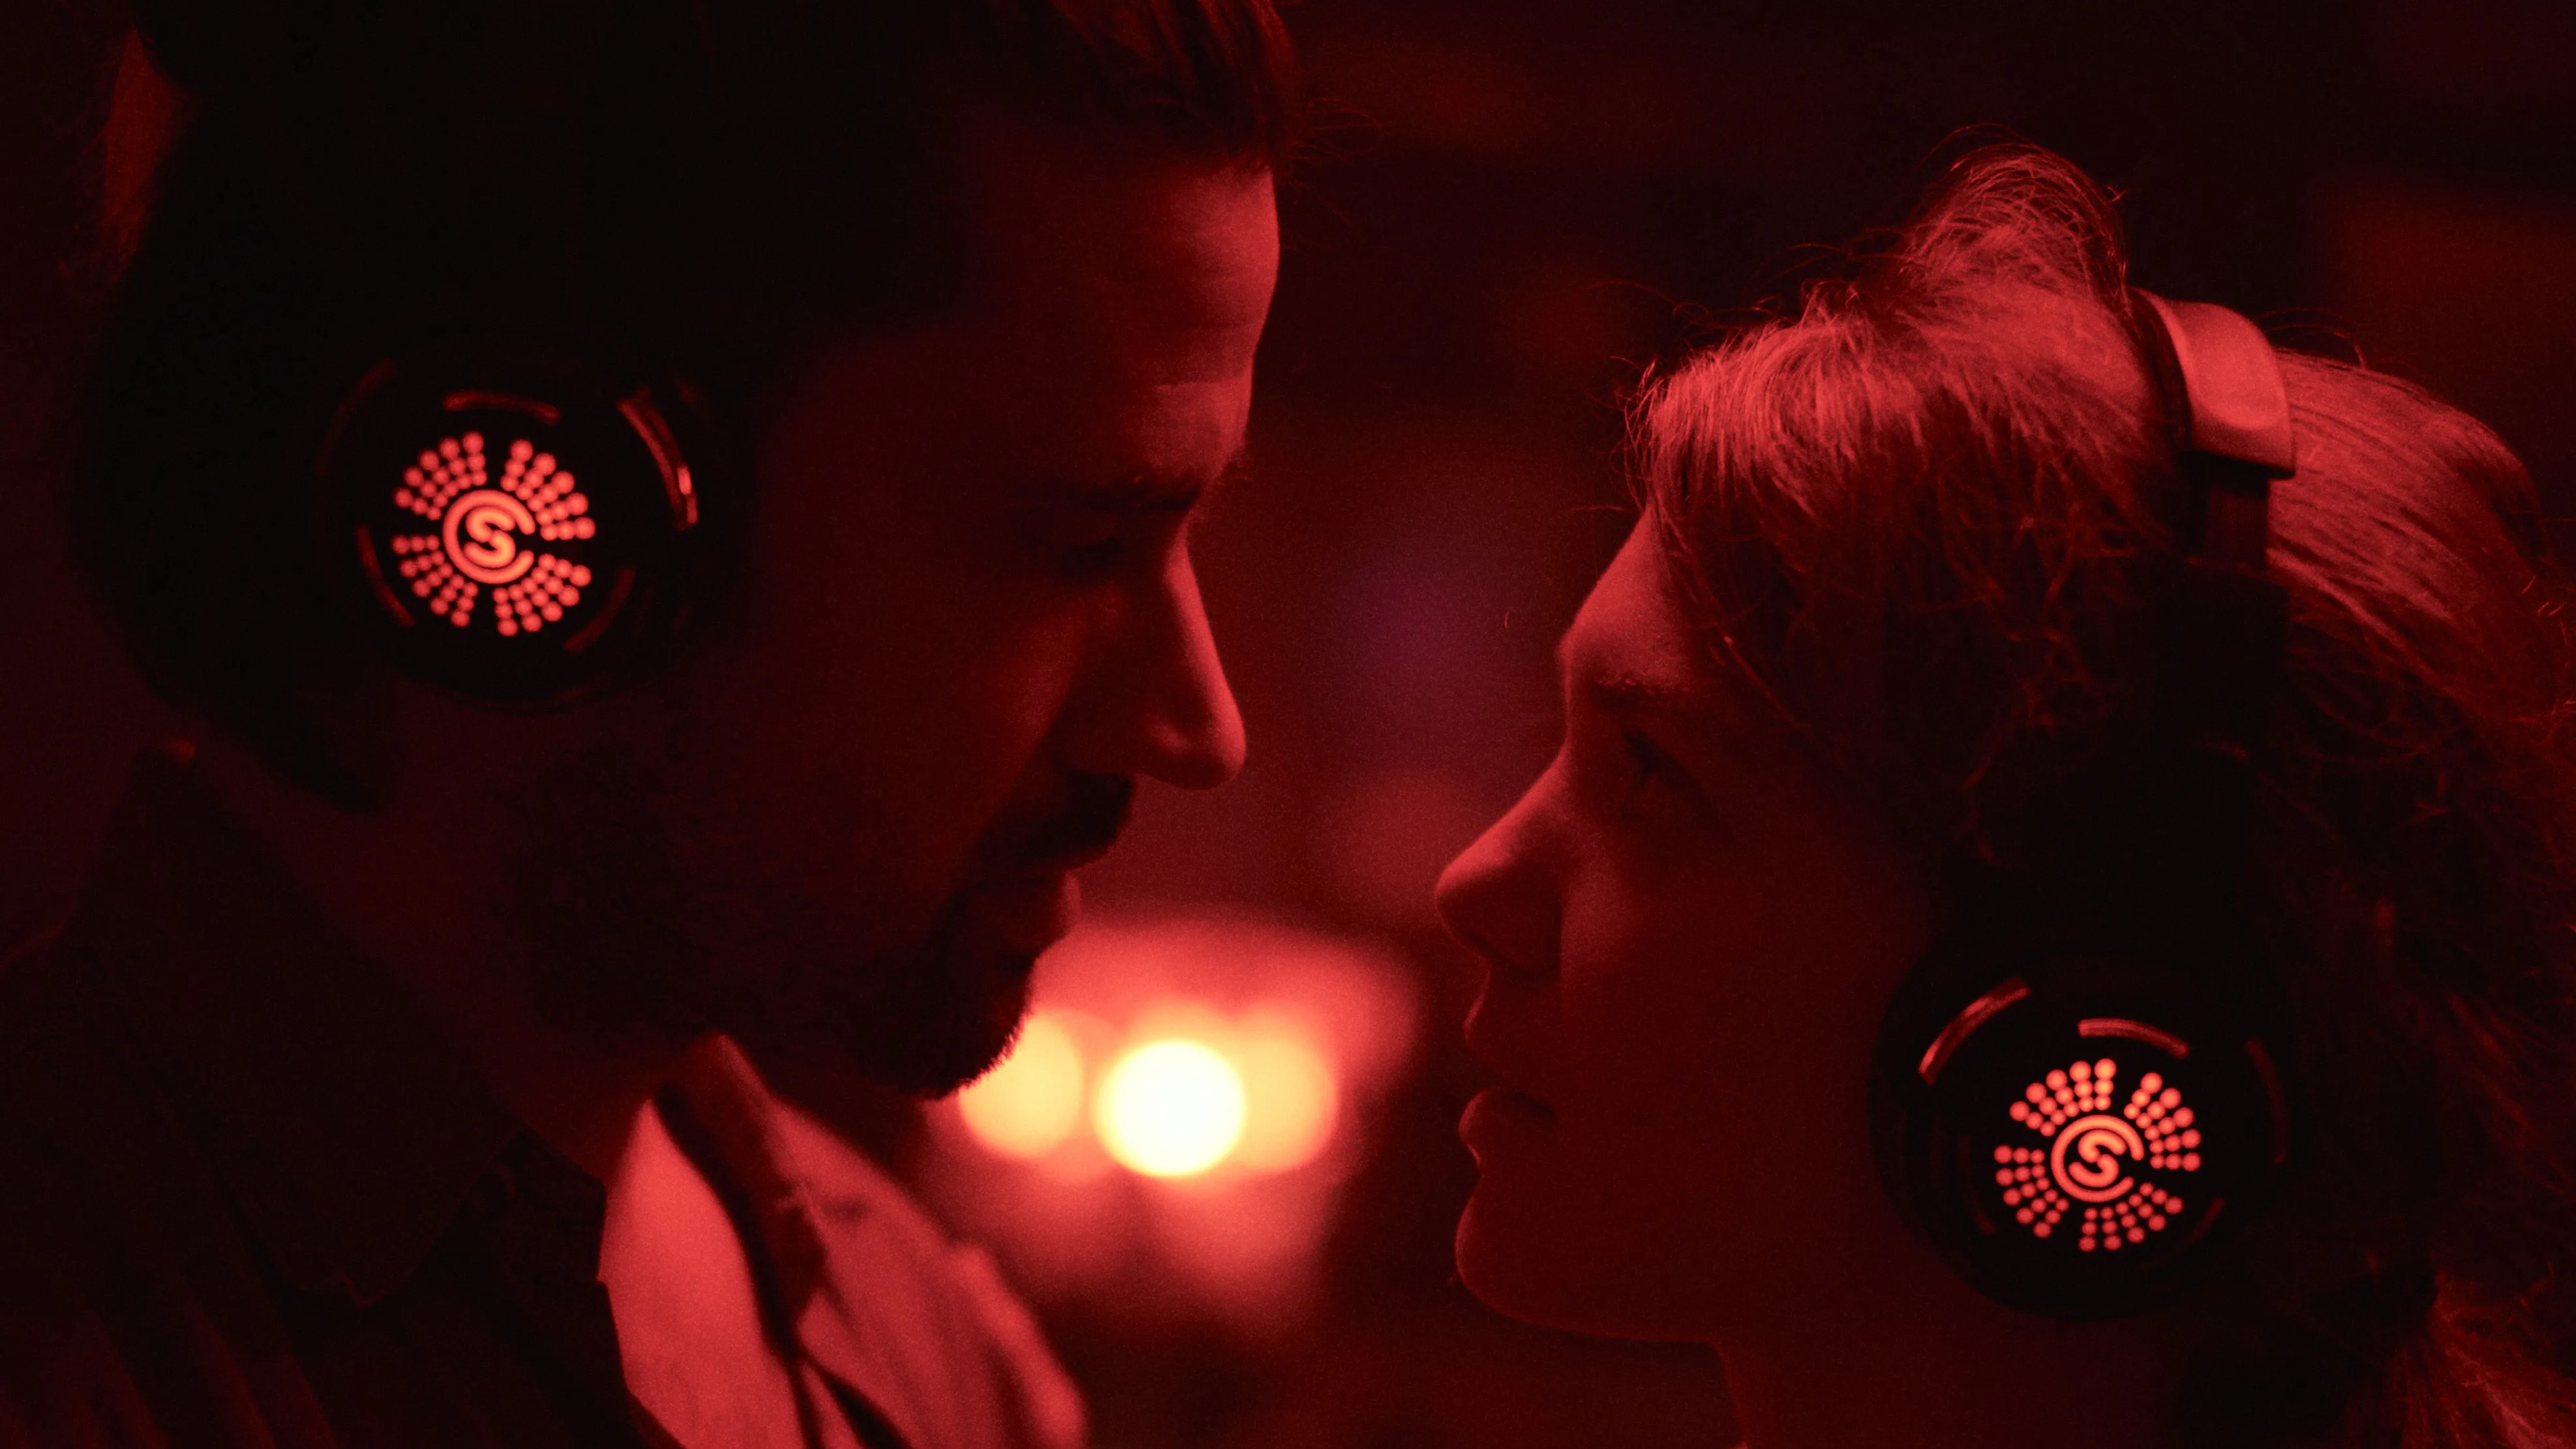 Bild aus dem Film: Zwei Menschen in einer Kopfhöhrer Disco schauen sich an.